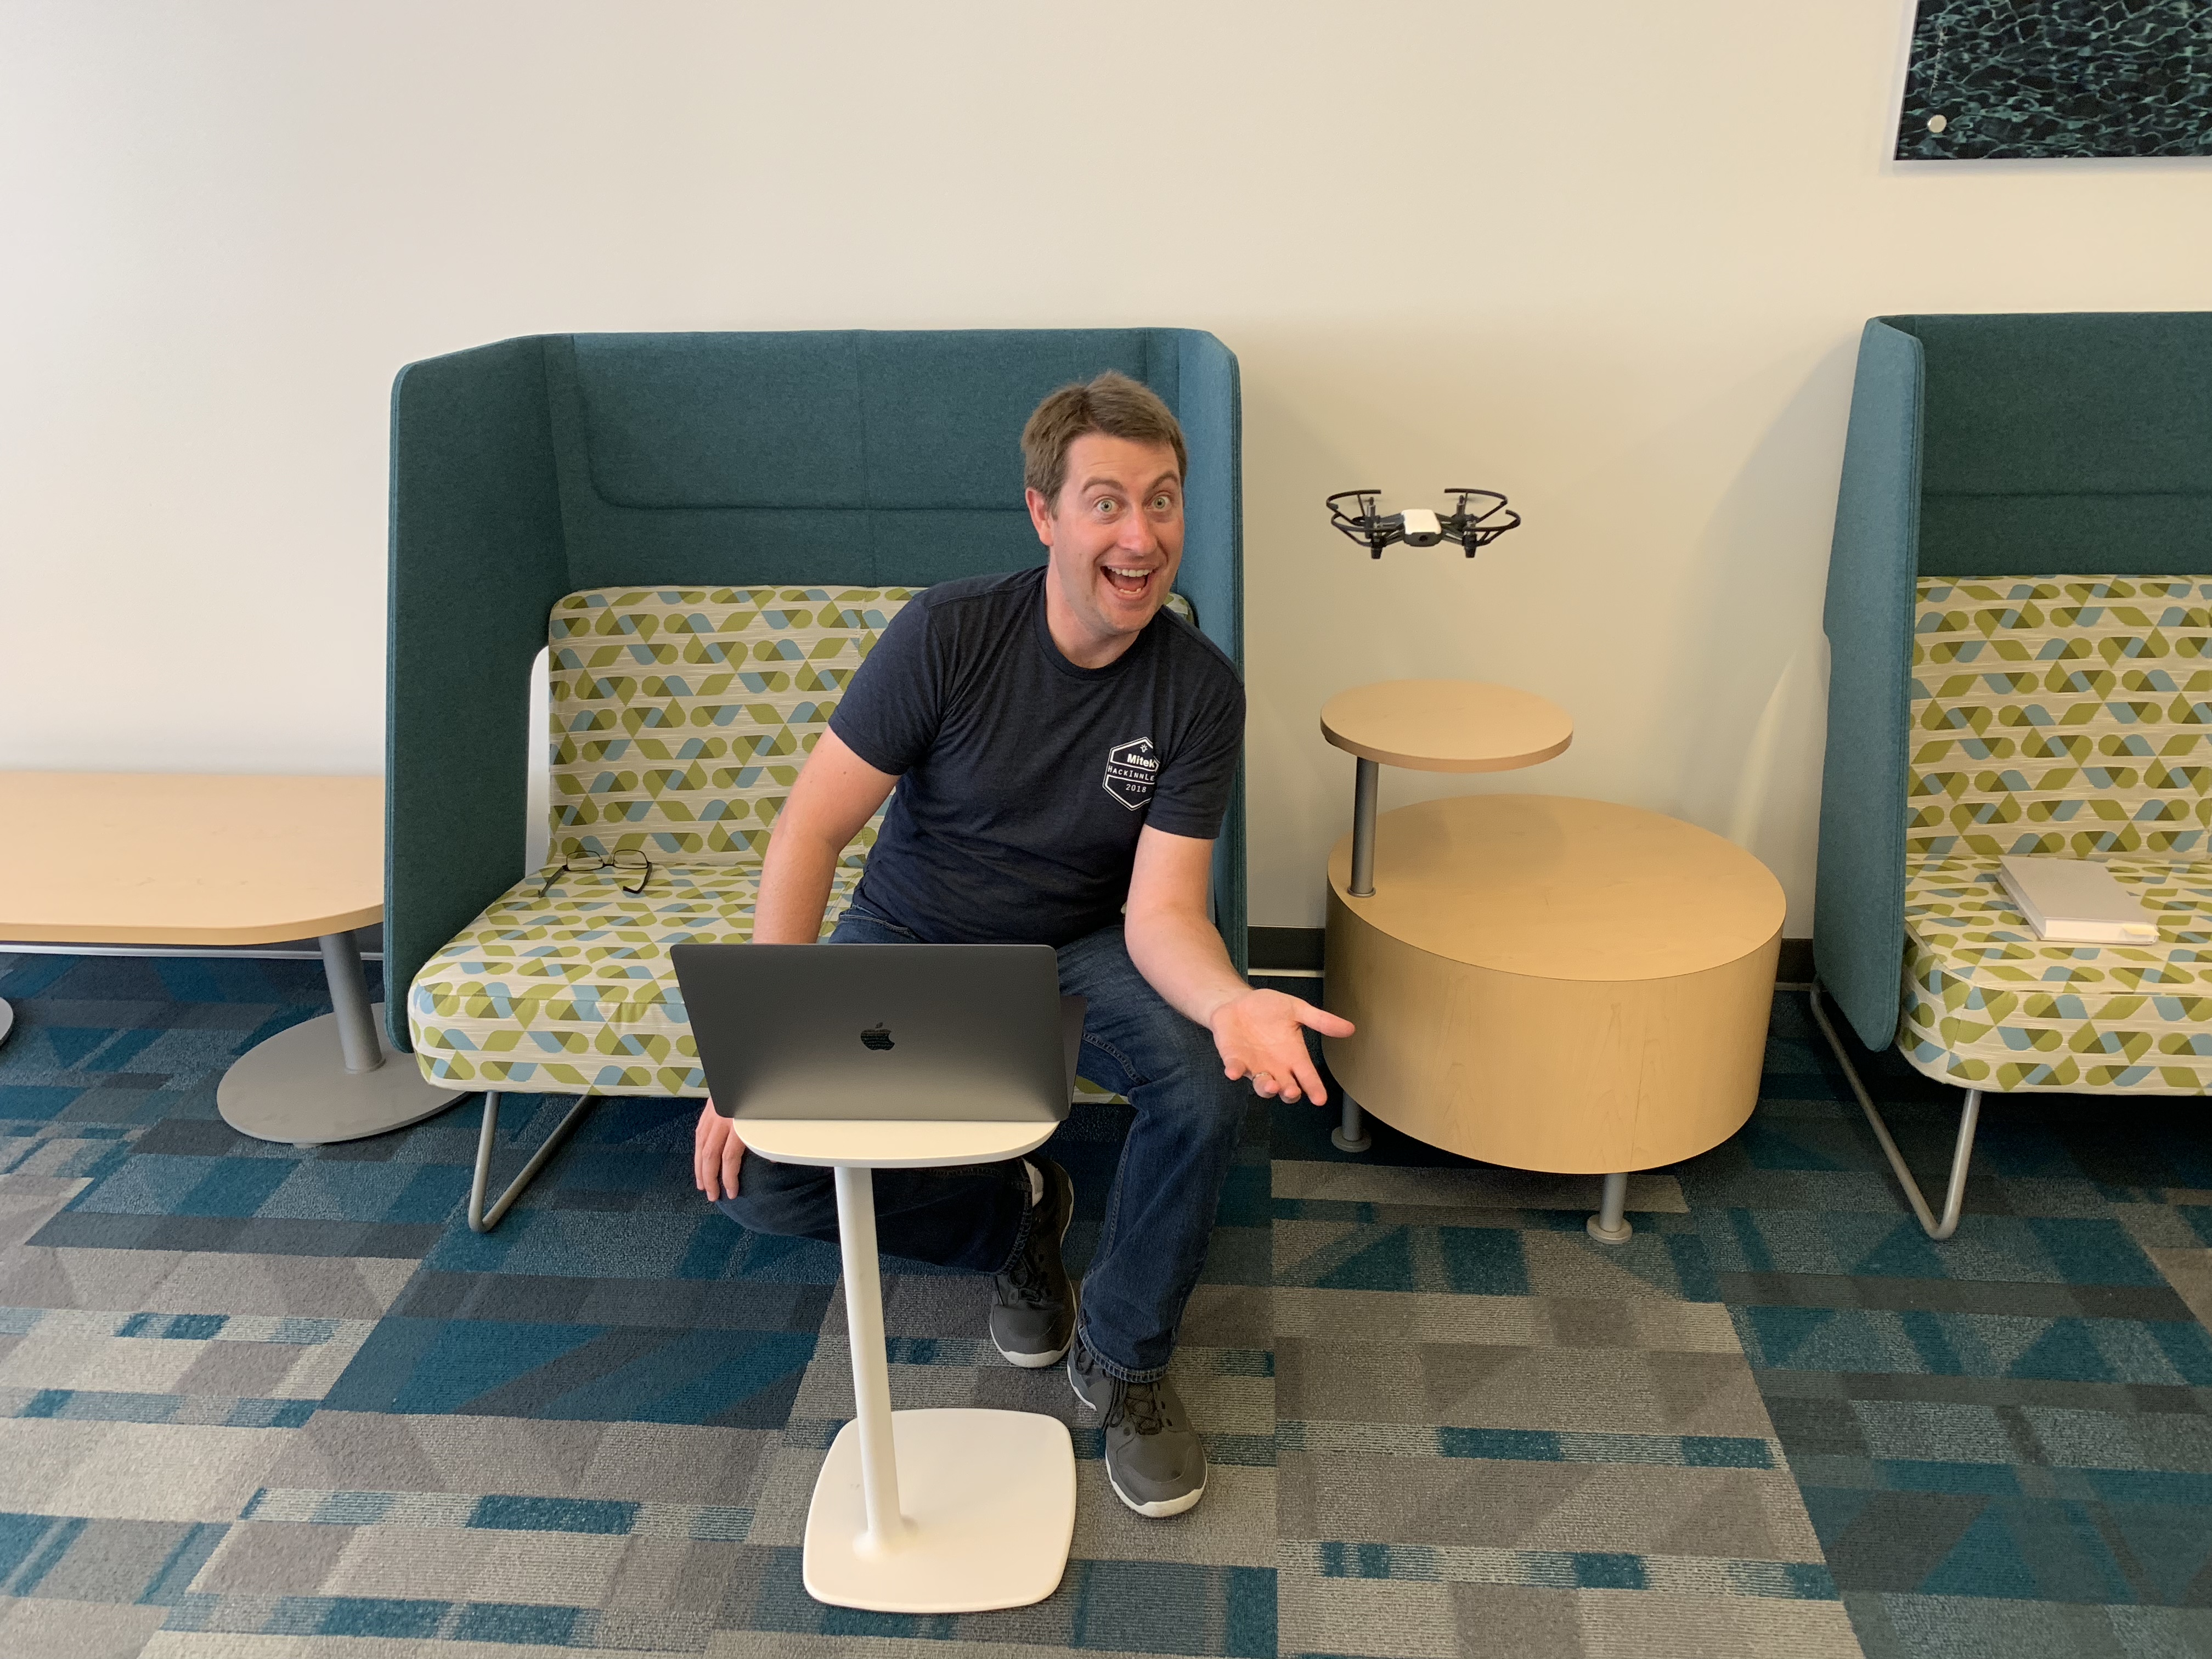 Hackathon: Tello Drone, Go, and Lua